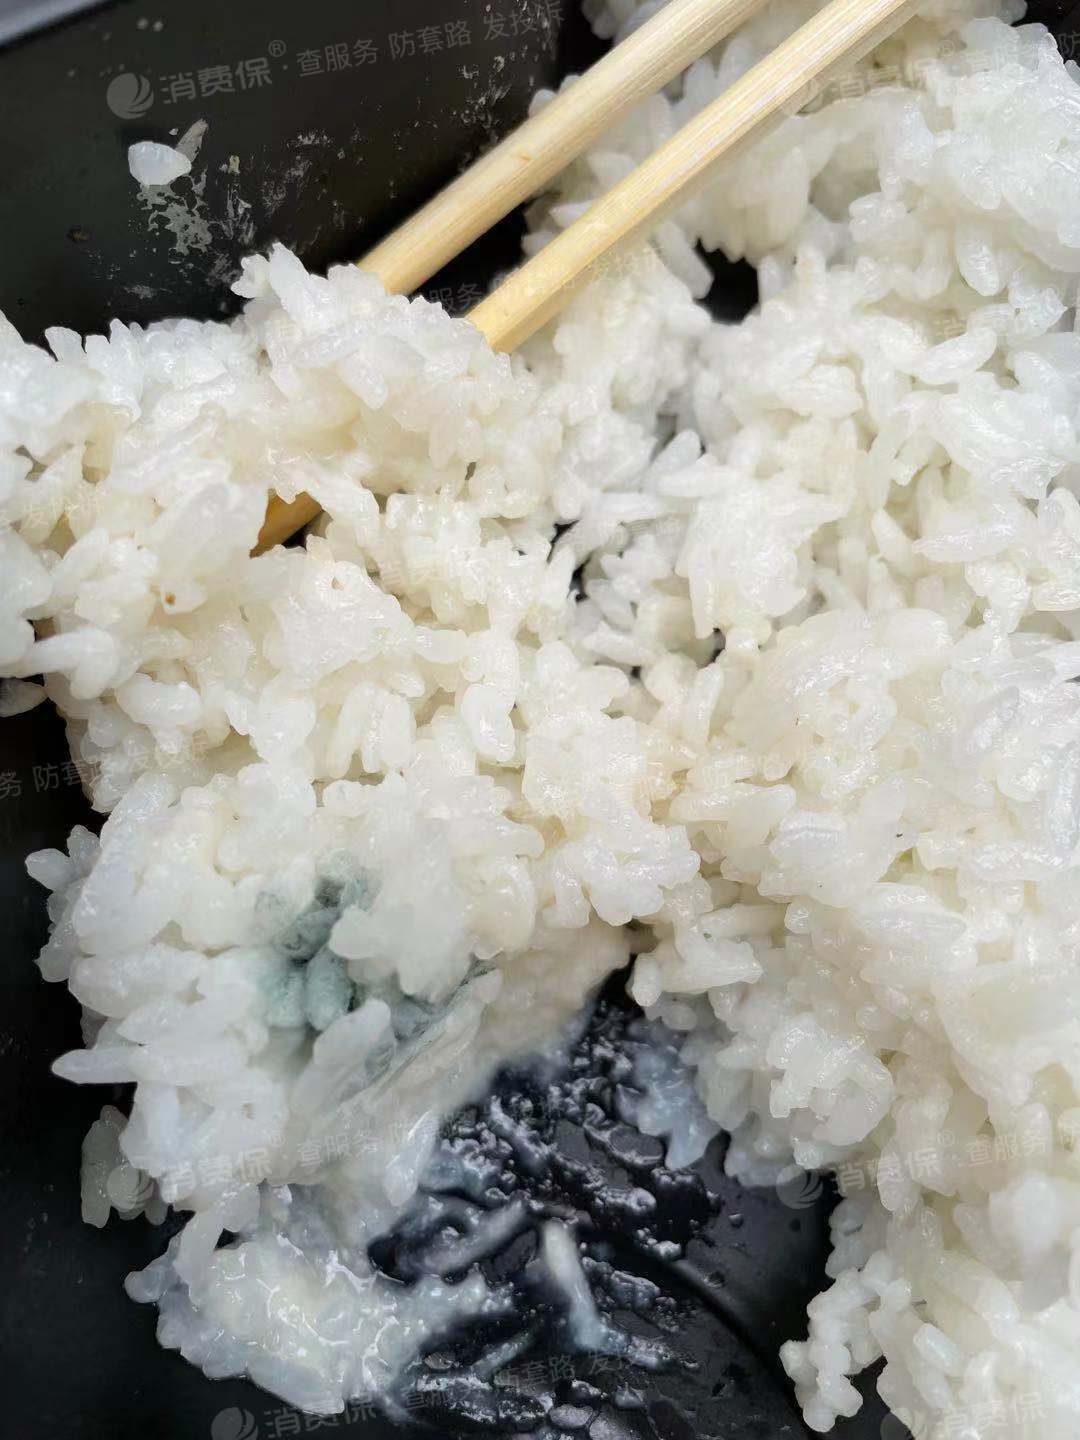 变质的米饭图片